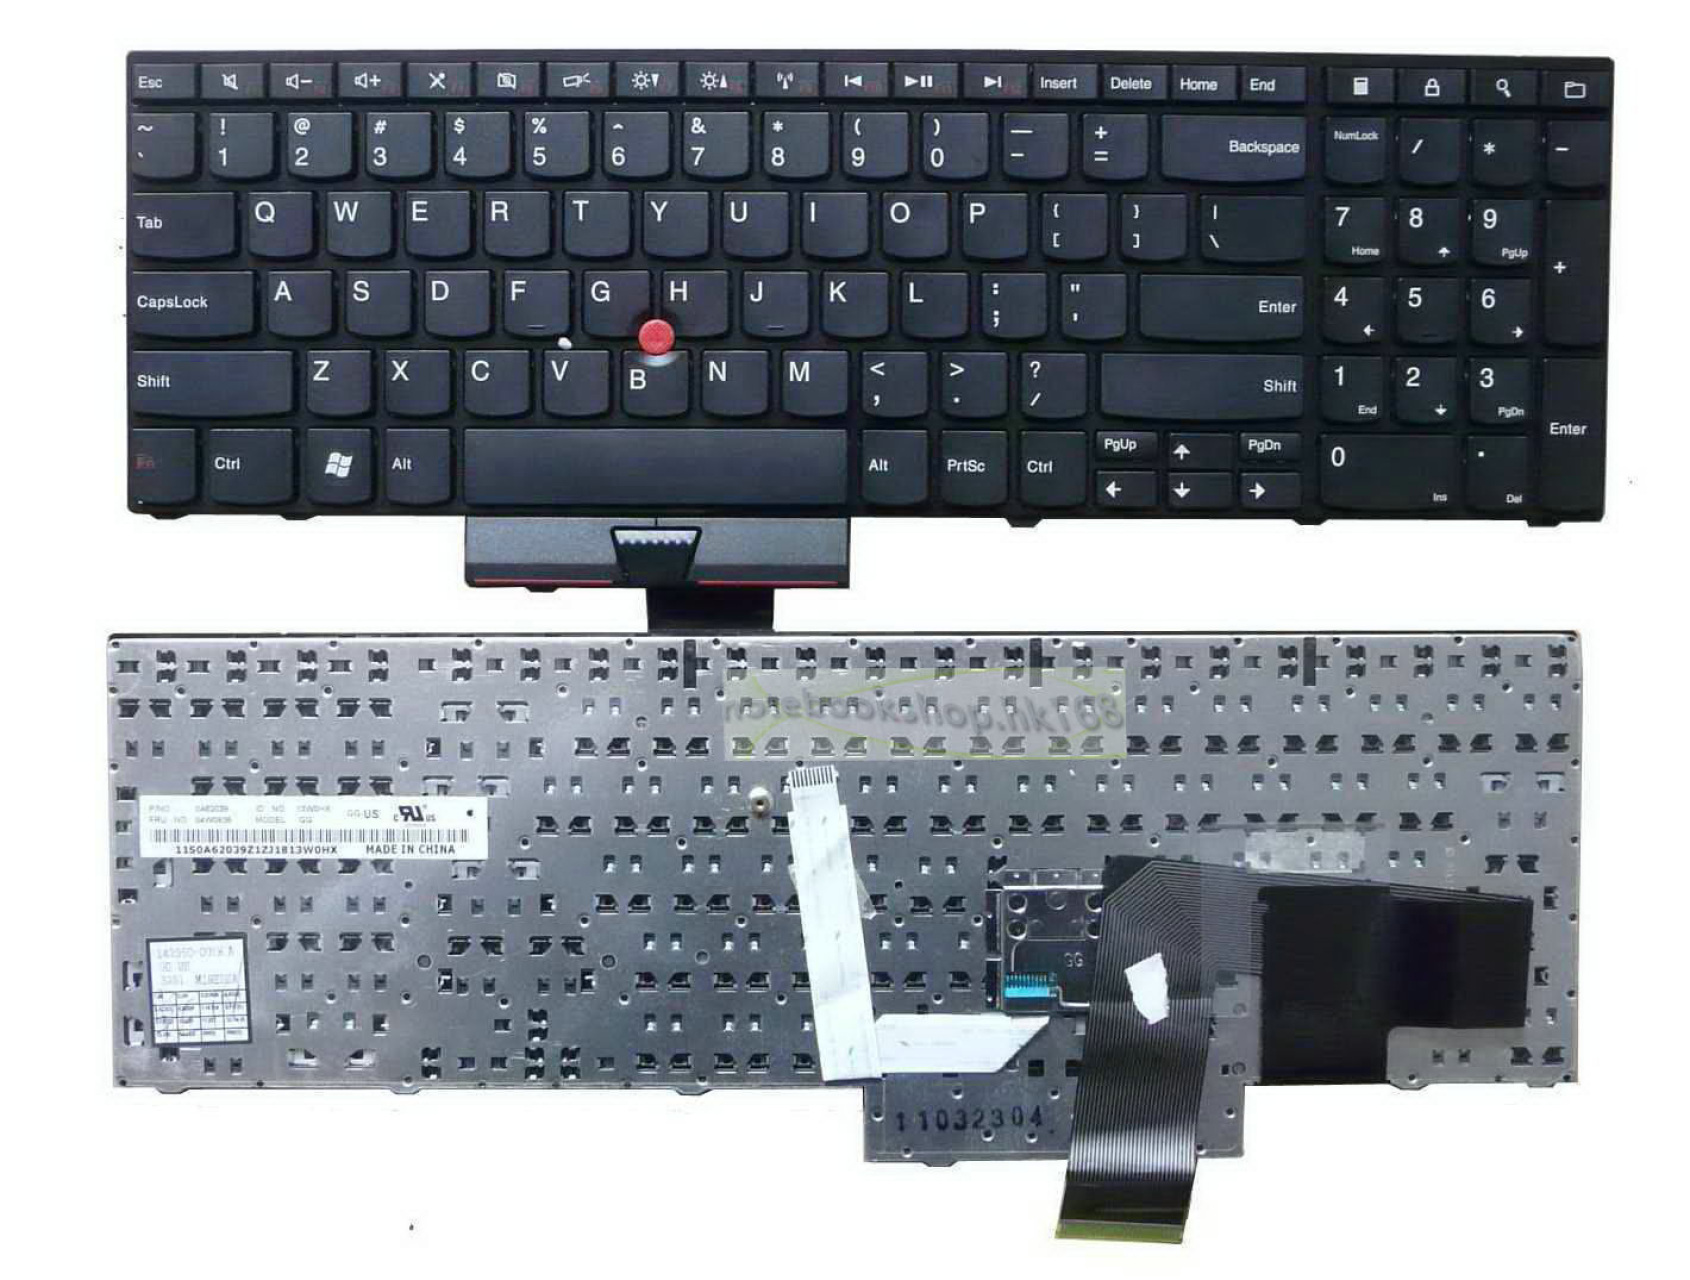 IBM Lenovo Thinkpad E520 IBM 0A62104 IBM MP-10M36GB-442 Black UK Replacement Laptop Keyboard IBM 04W0901